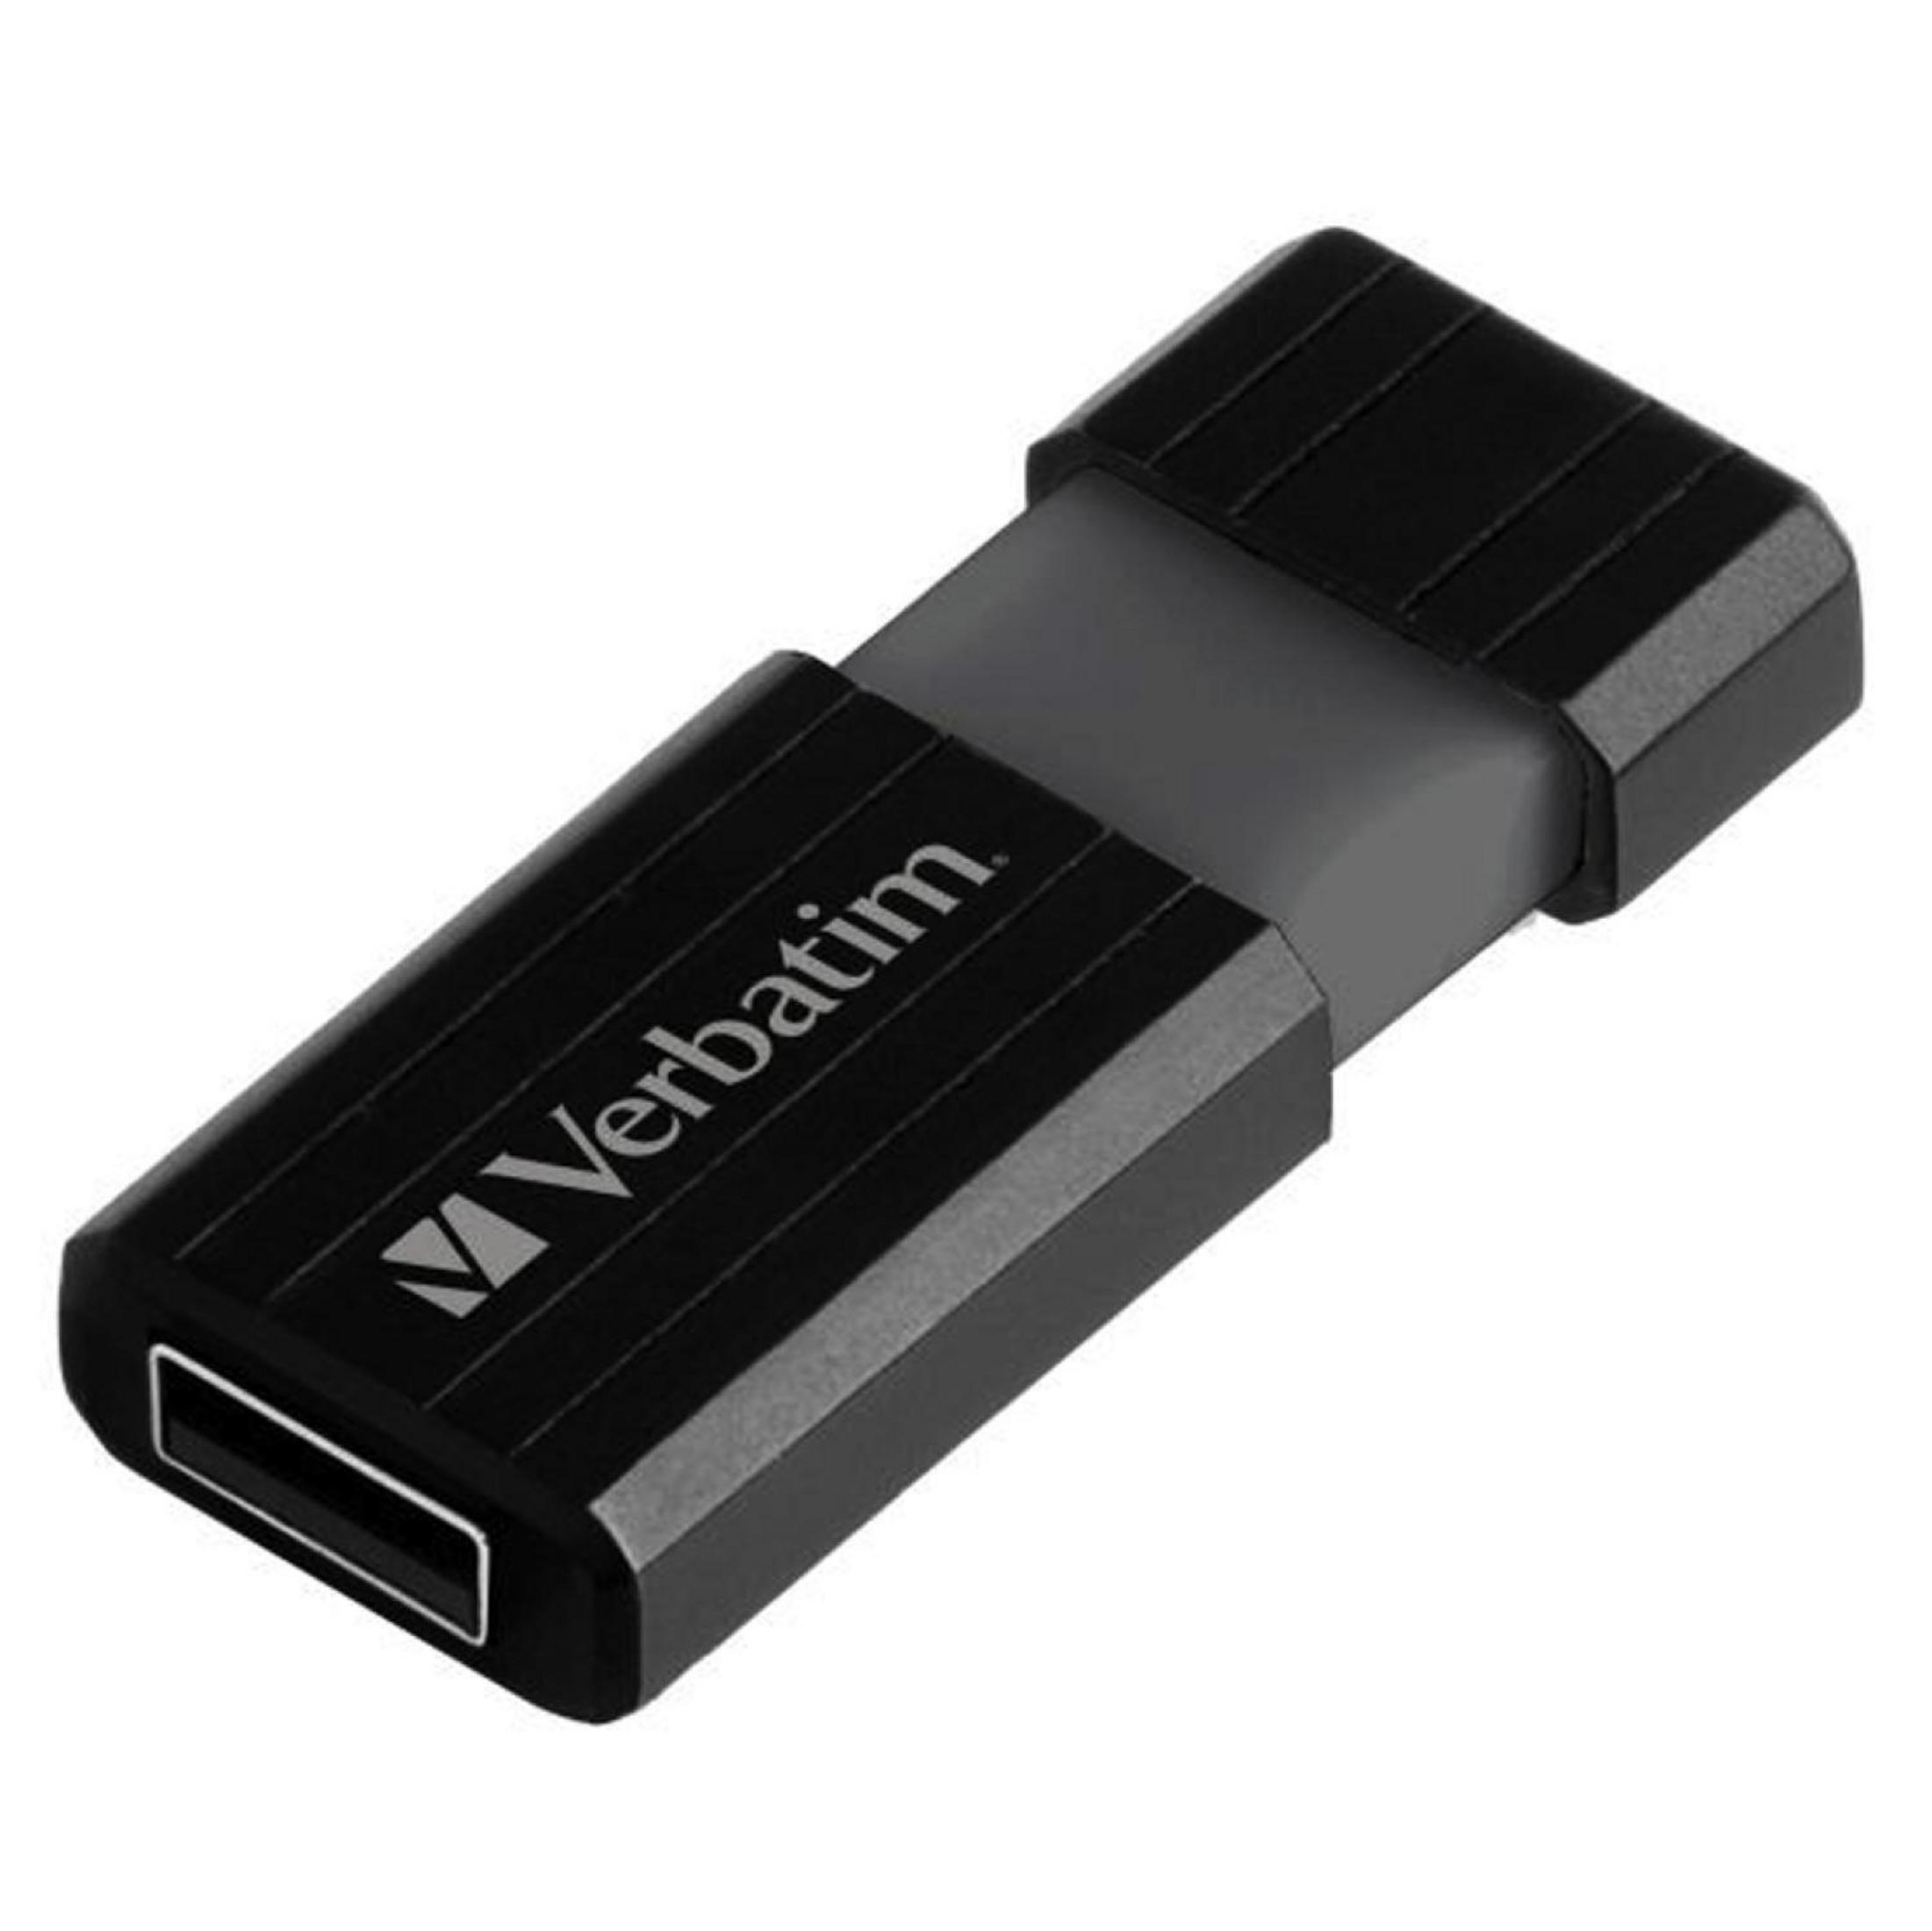 VERBATIM 49062 8GB (Schwarz, STRIPE USB-Stick USB PIN 8 GB) DRIVE 2.0